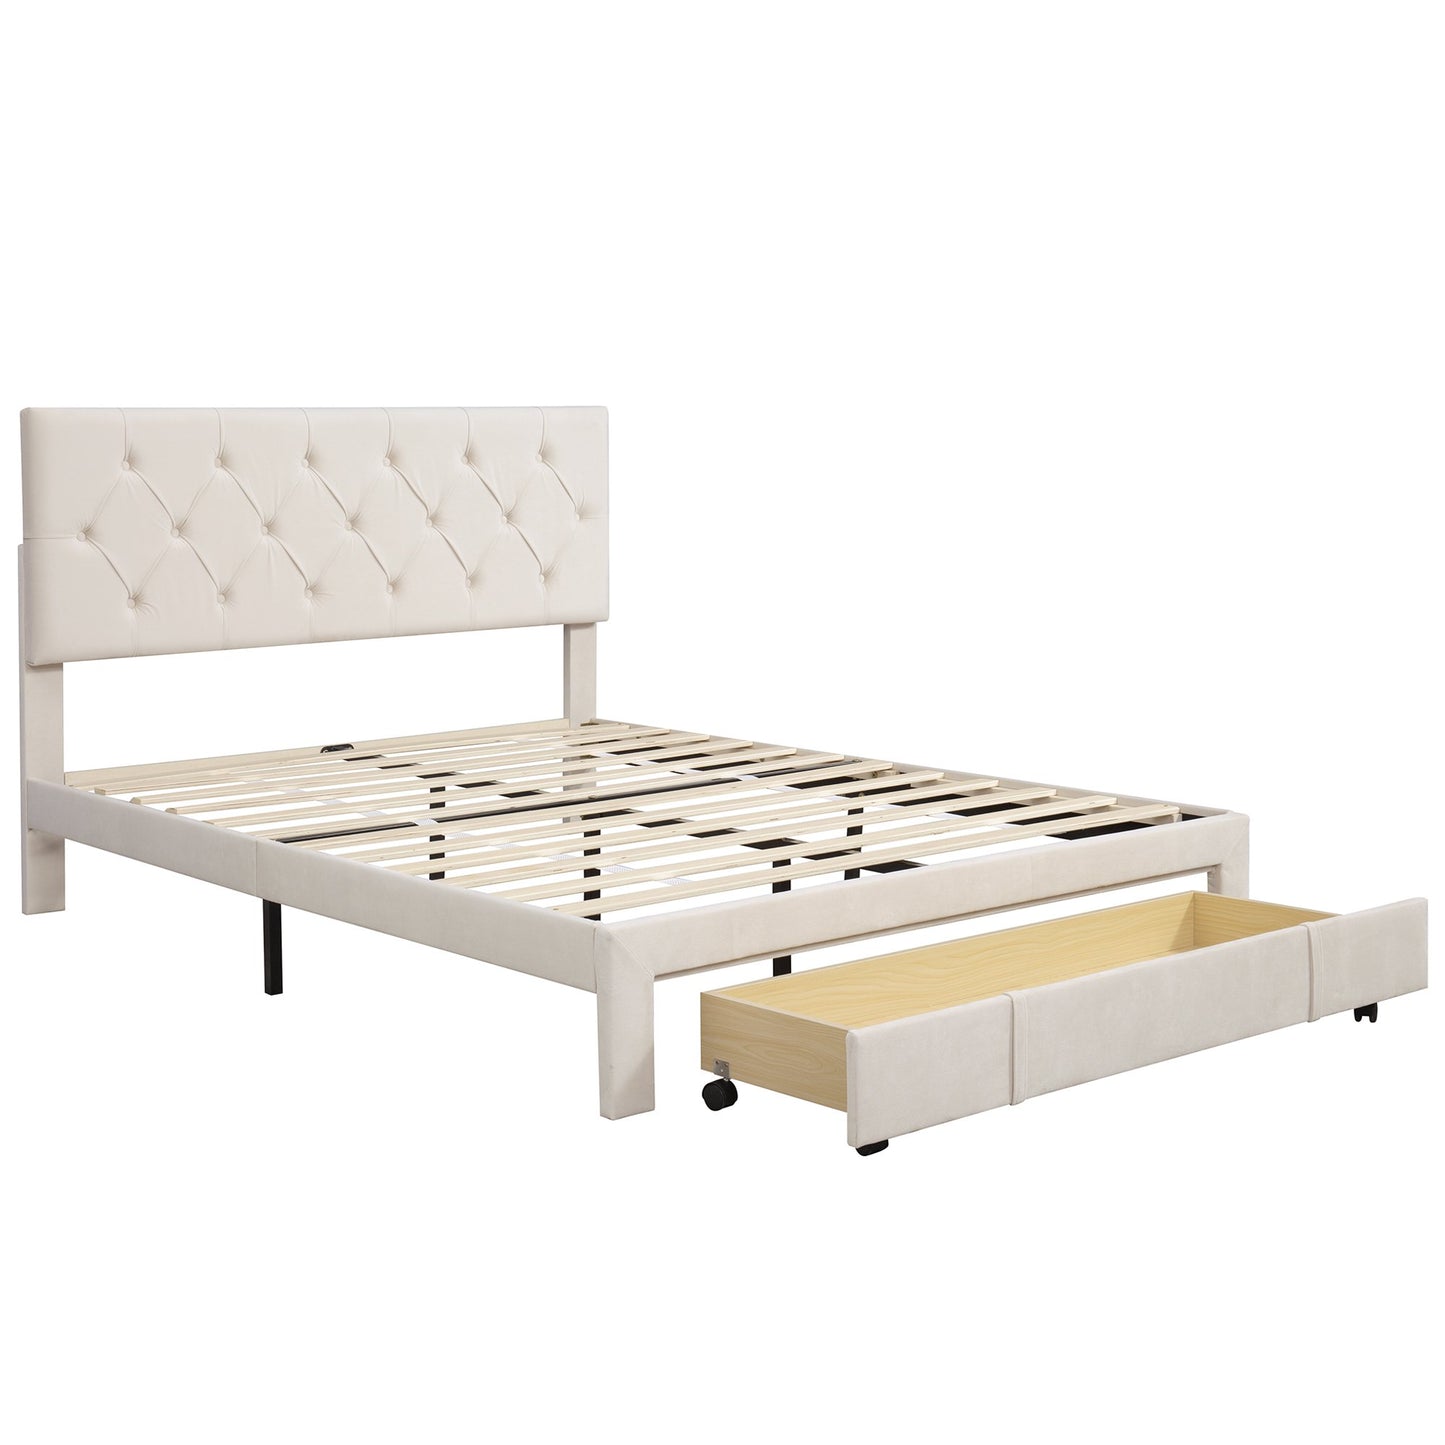 Gewnee Queen Size Metal Platform Bed Frame with Storage Drawer,Beige